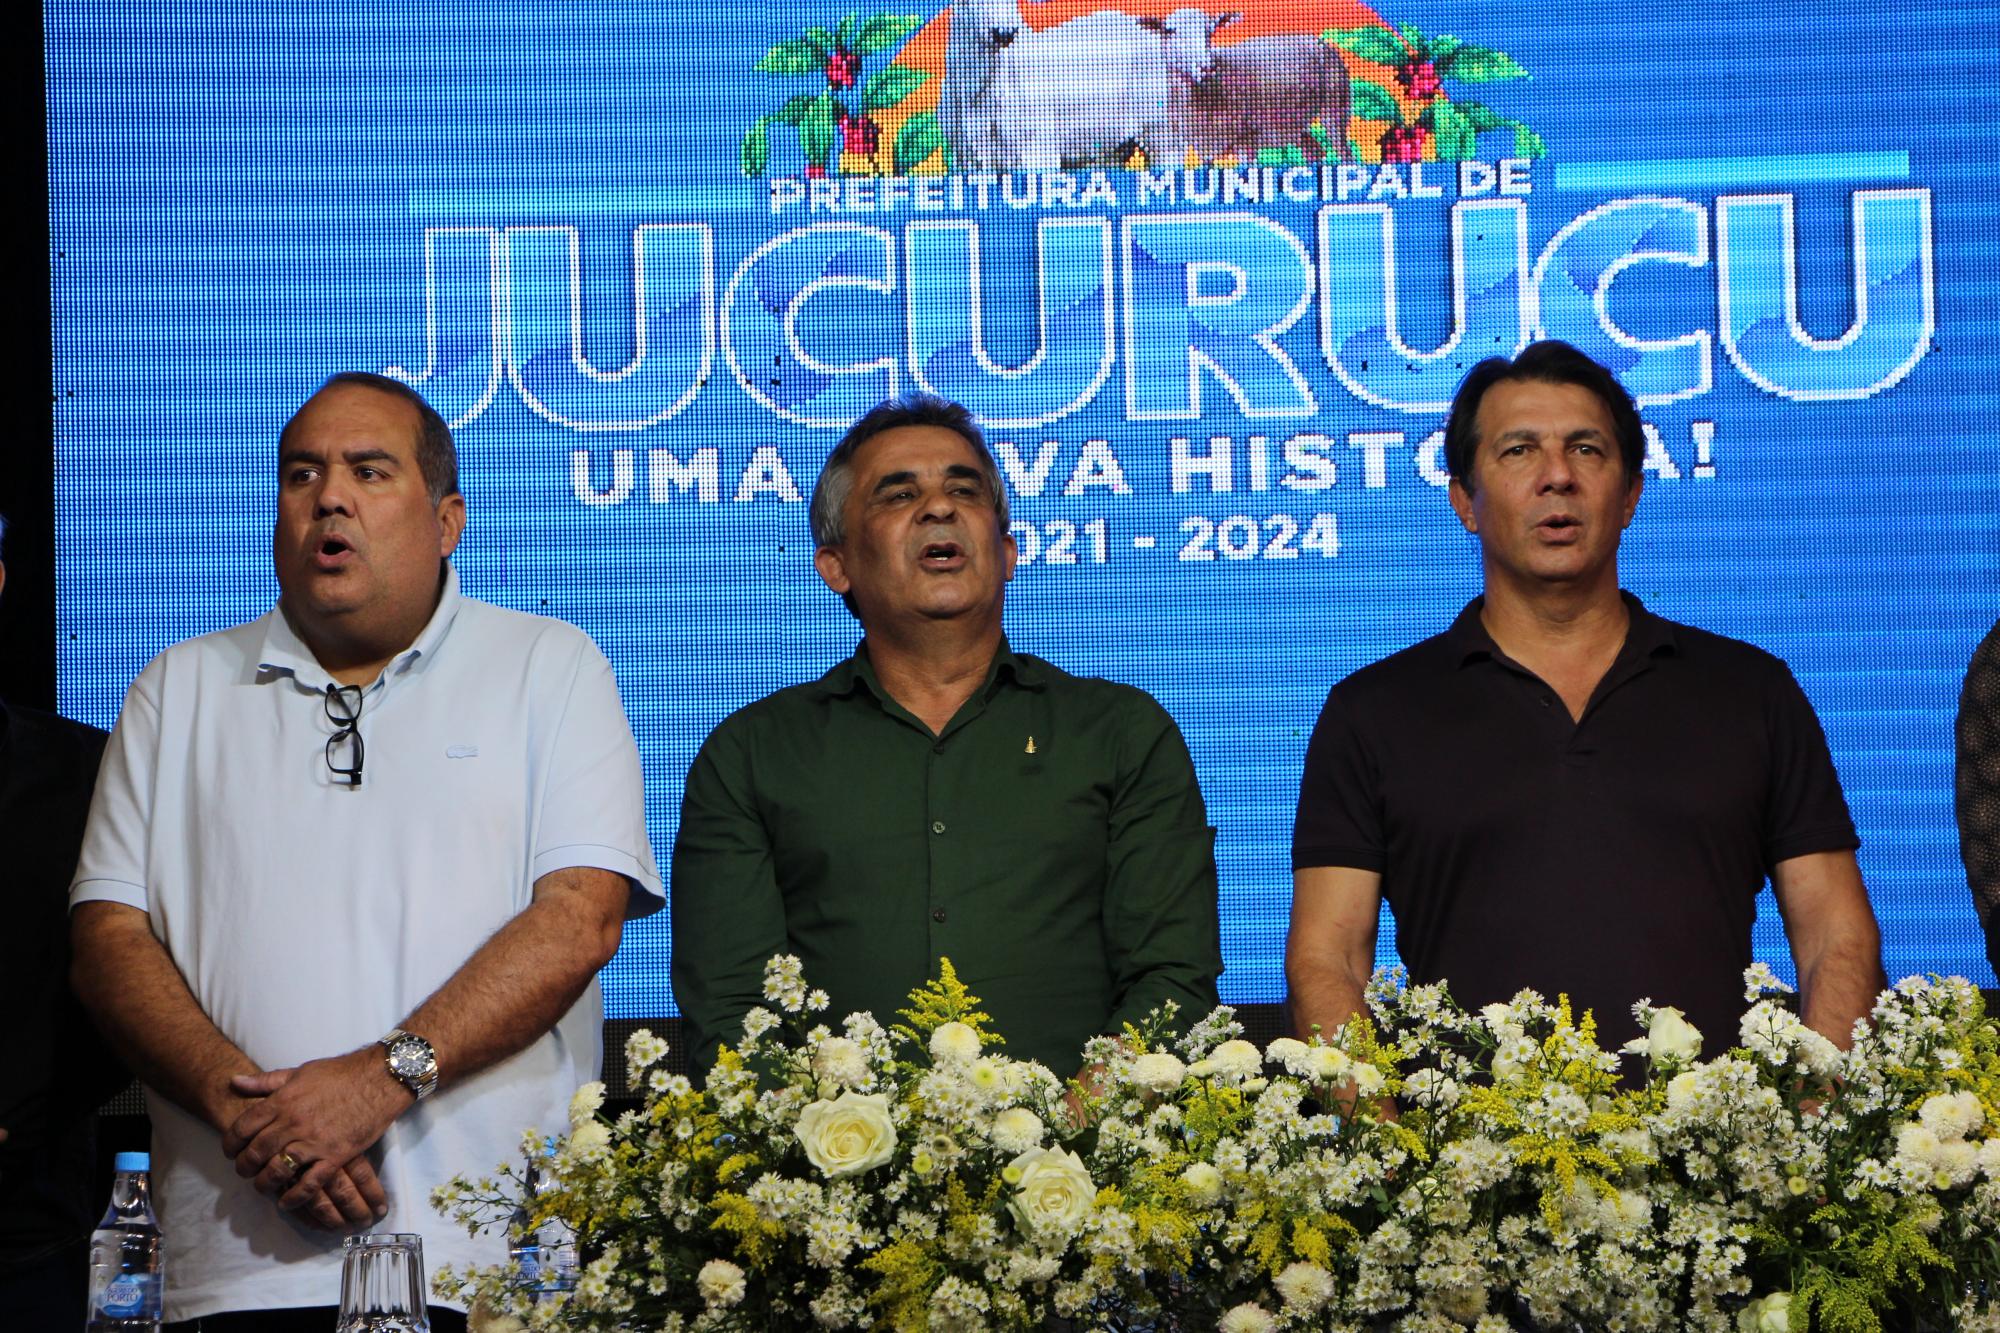 Prefeito Lili apresenta nova frota de veículos para atender Jucuruçu. “Mais de um milhão em investimentos”